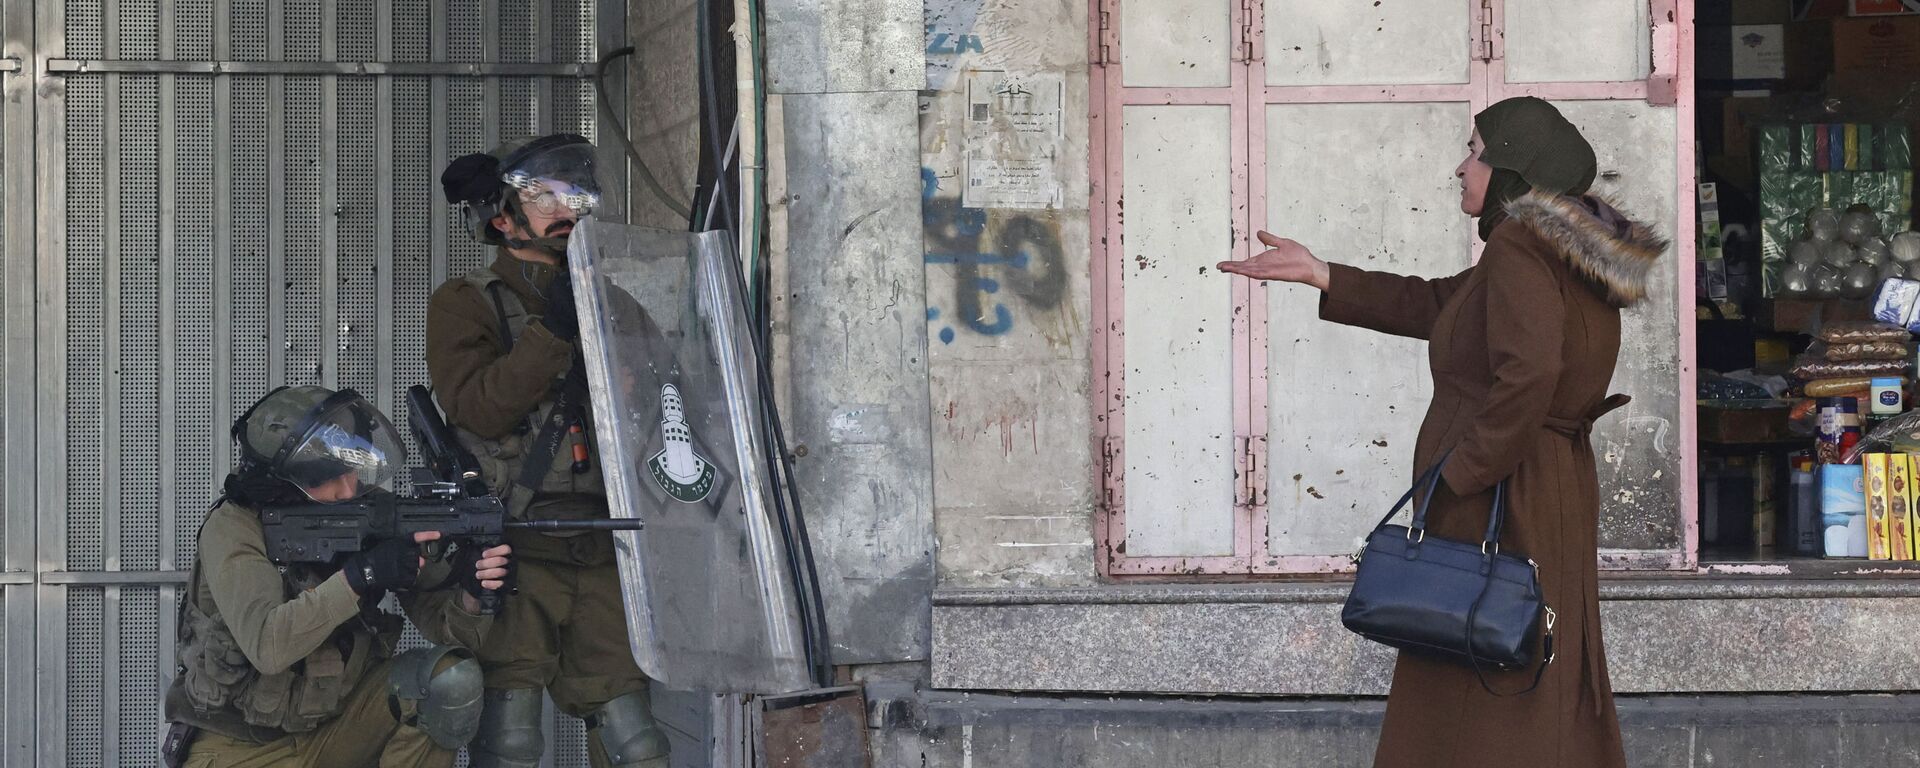 امرأة تشير إلى قوات الأمن الإسرائيلية التي أطلقت الرصاص المطاطي لتفريق فلسطينيين يلقون الحجارة وسط اشتباكات في بلدة الخليل بالضفة الغربية المحتلة، 9 فبراير 2022.  - سبوتنيك عربي, 1920, 22.09.2022